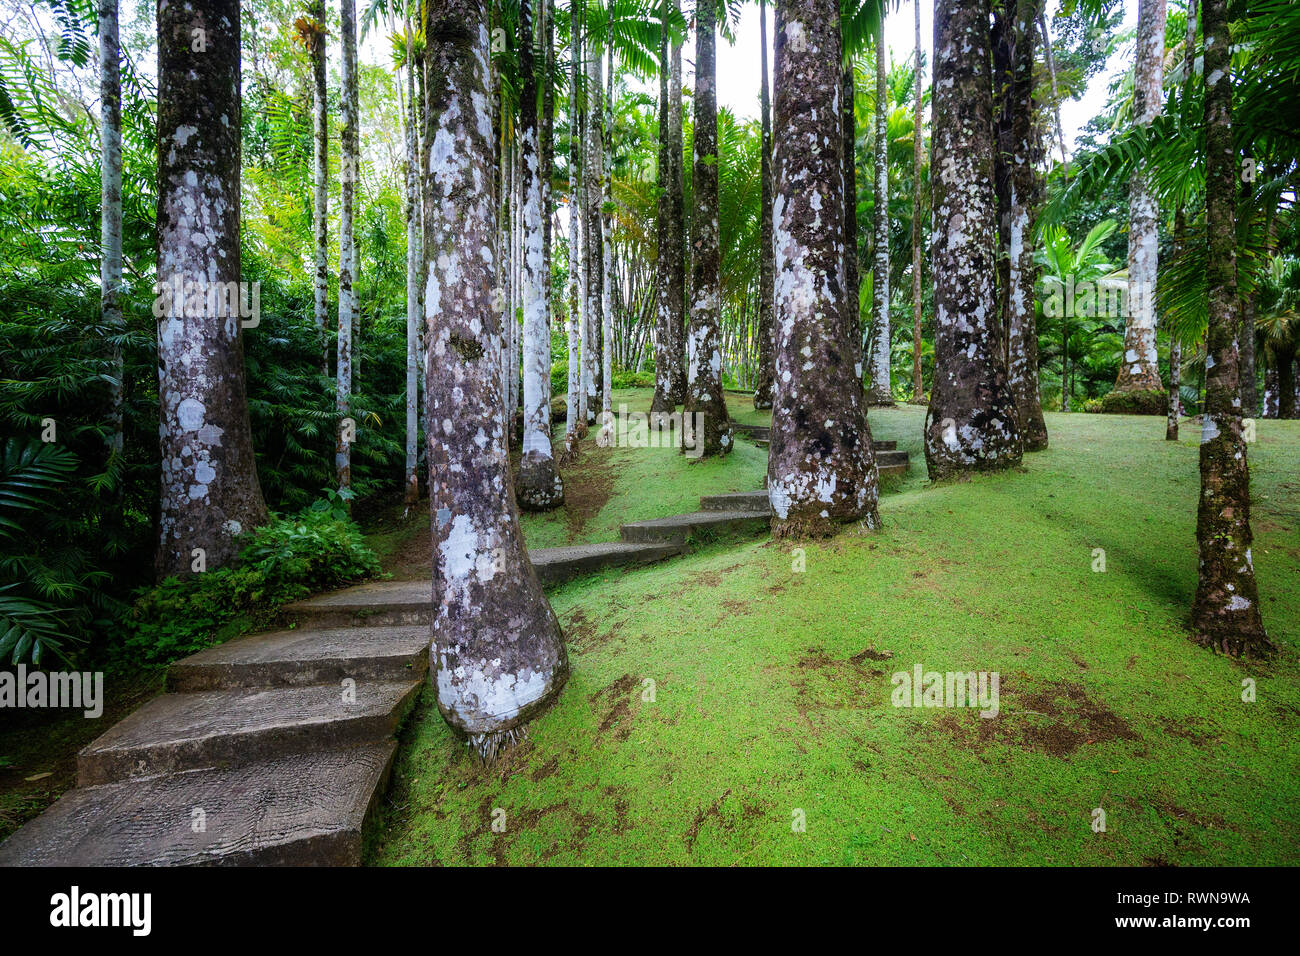 Fort-de-France, Martinique - Januar 15, 2018: Tropische Garten Balata. Die balata ist ein botanischer Garten auf der Route de Balata ca. 10 km, Stockfoto